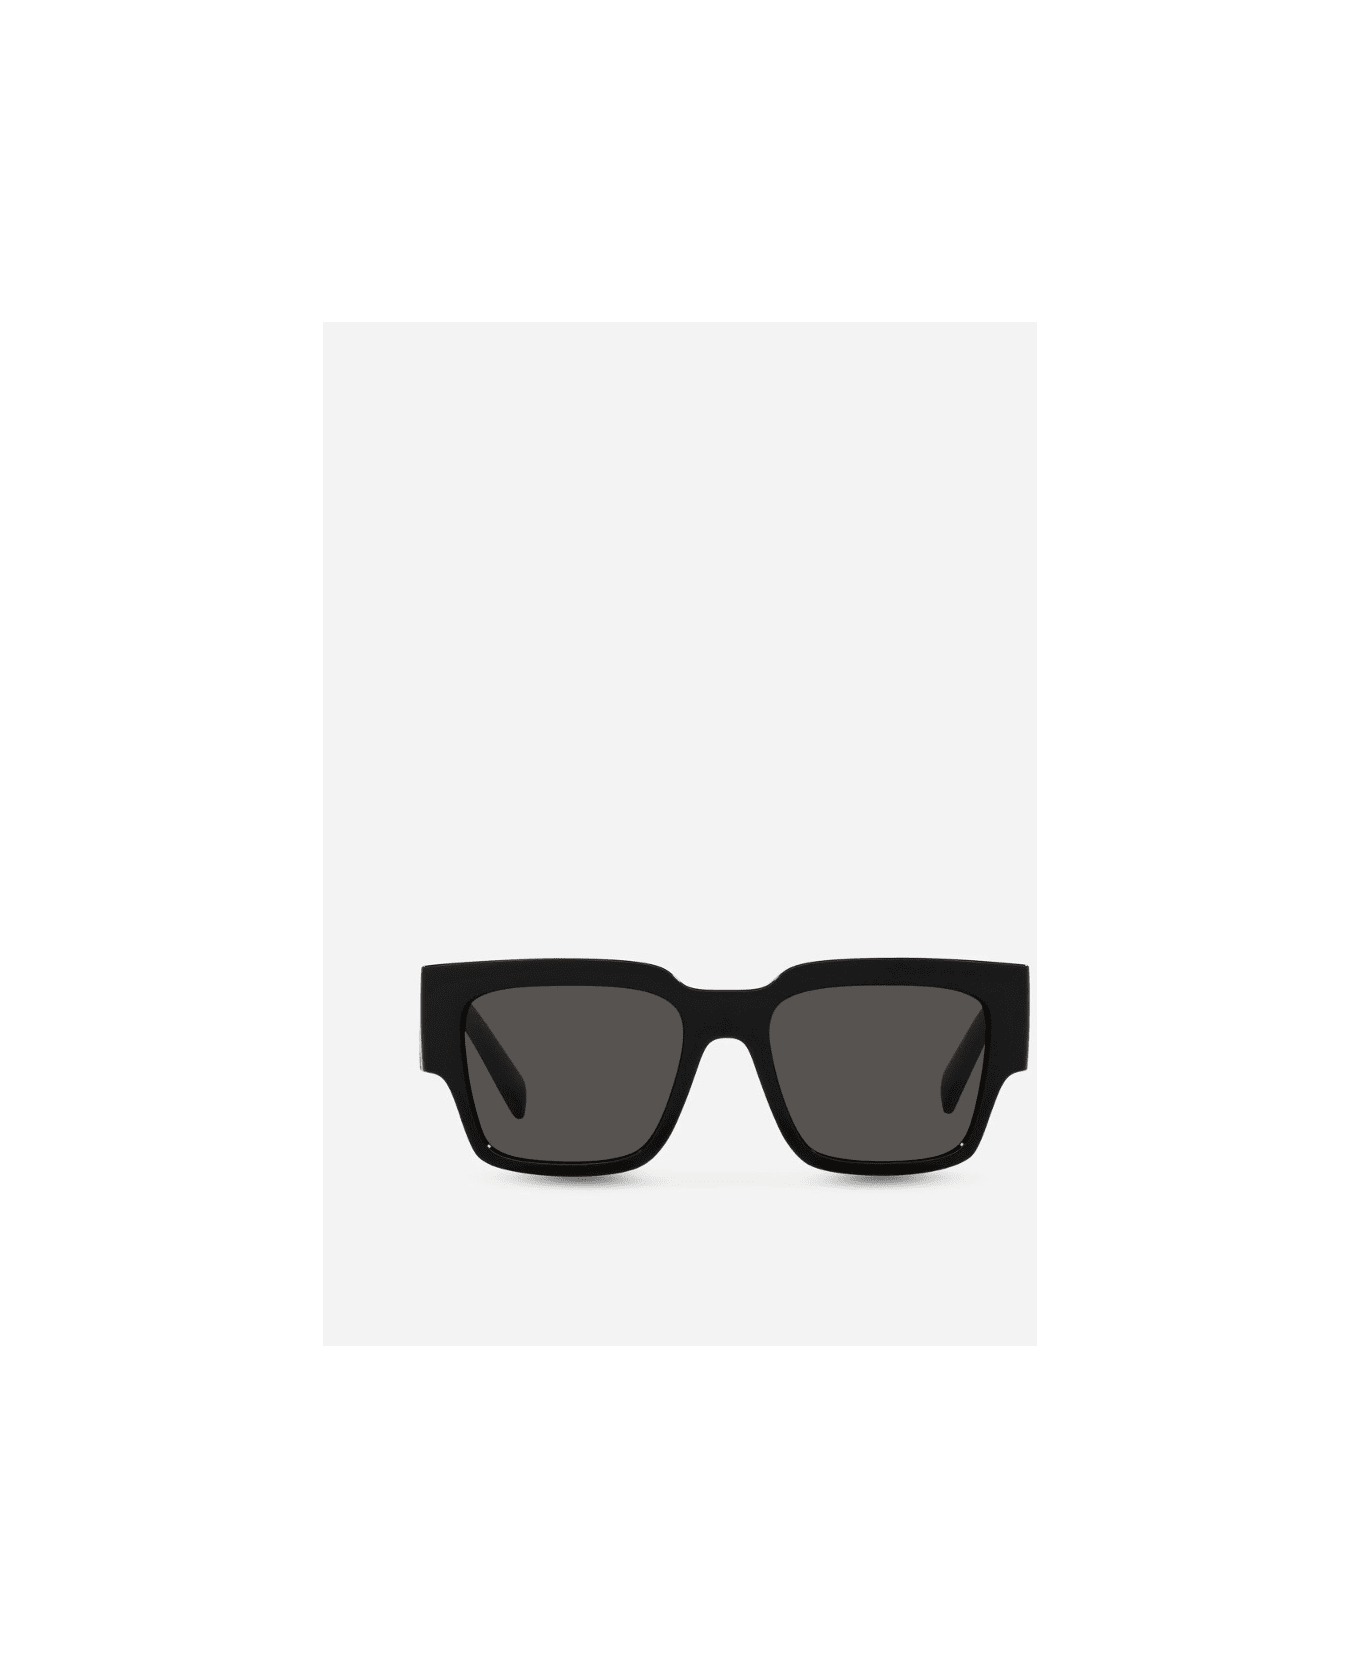 Womens Reiss Acetate Sunglasses Eyewear DG6184s Sunglasses - Nero